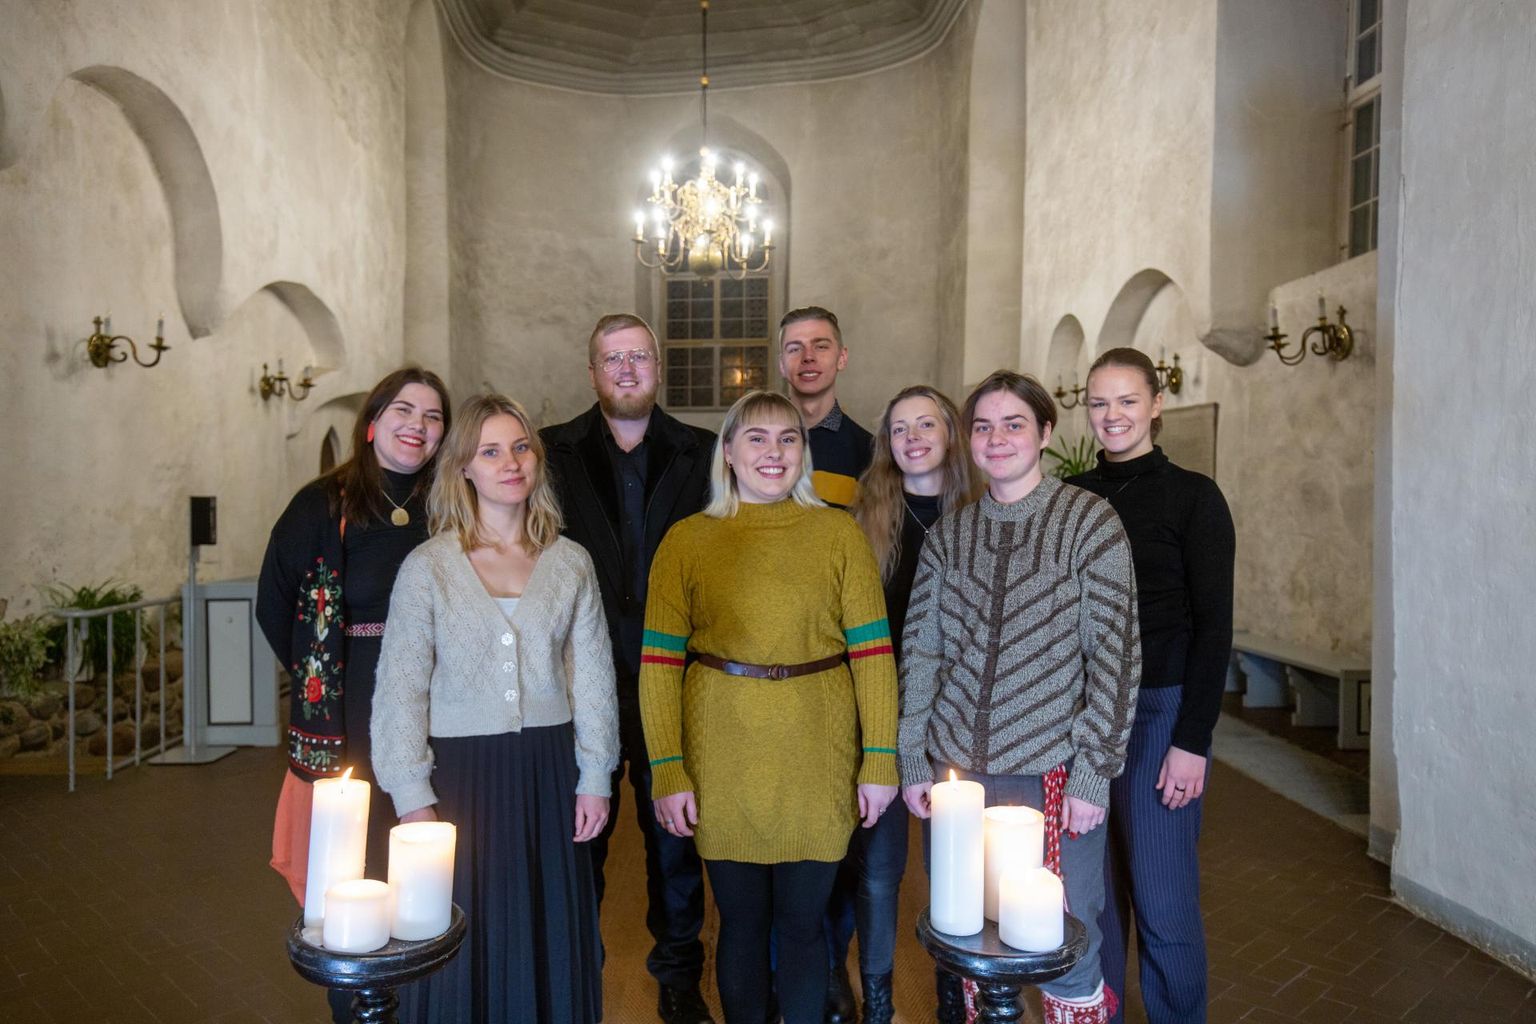 Viljandi kultuuriakadeemia pärimusmuusika eriala tudengid tulid kaheksakesi kokku, et laulda inimestele mõned regivärsilised jõululaulud.